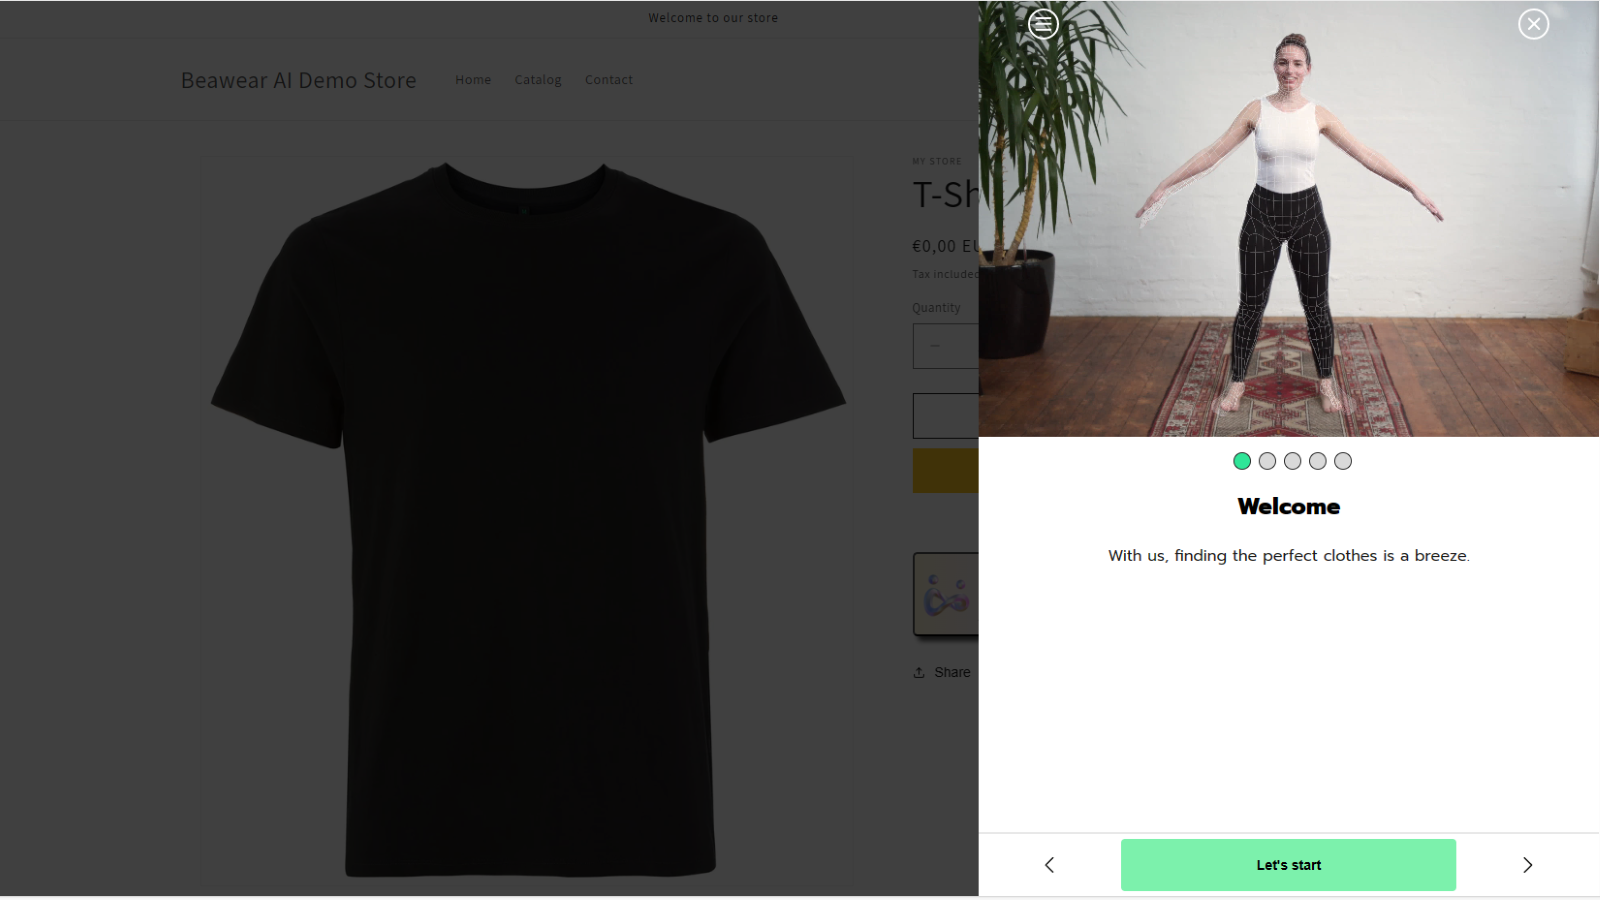 cliente escaneándose a sí misma en tienda online para recomendar tallas adecuadas